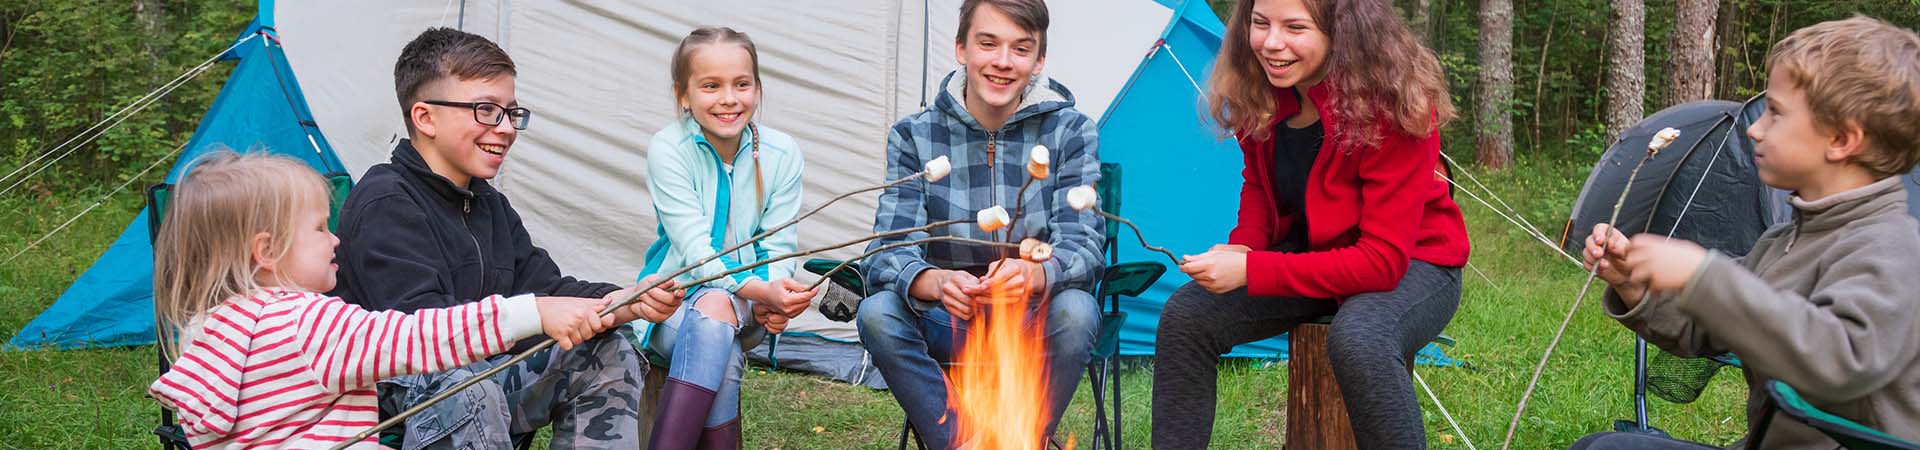 Summer camp – Alcuni bambini cucinano dei marshmallows sul fuoco.